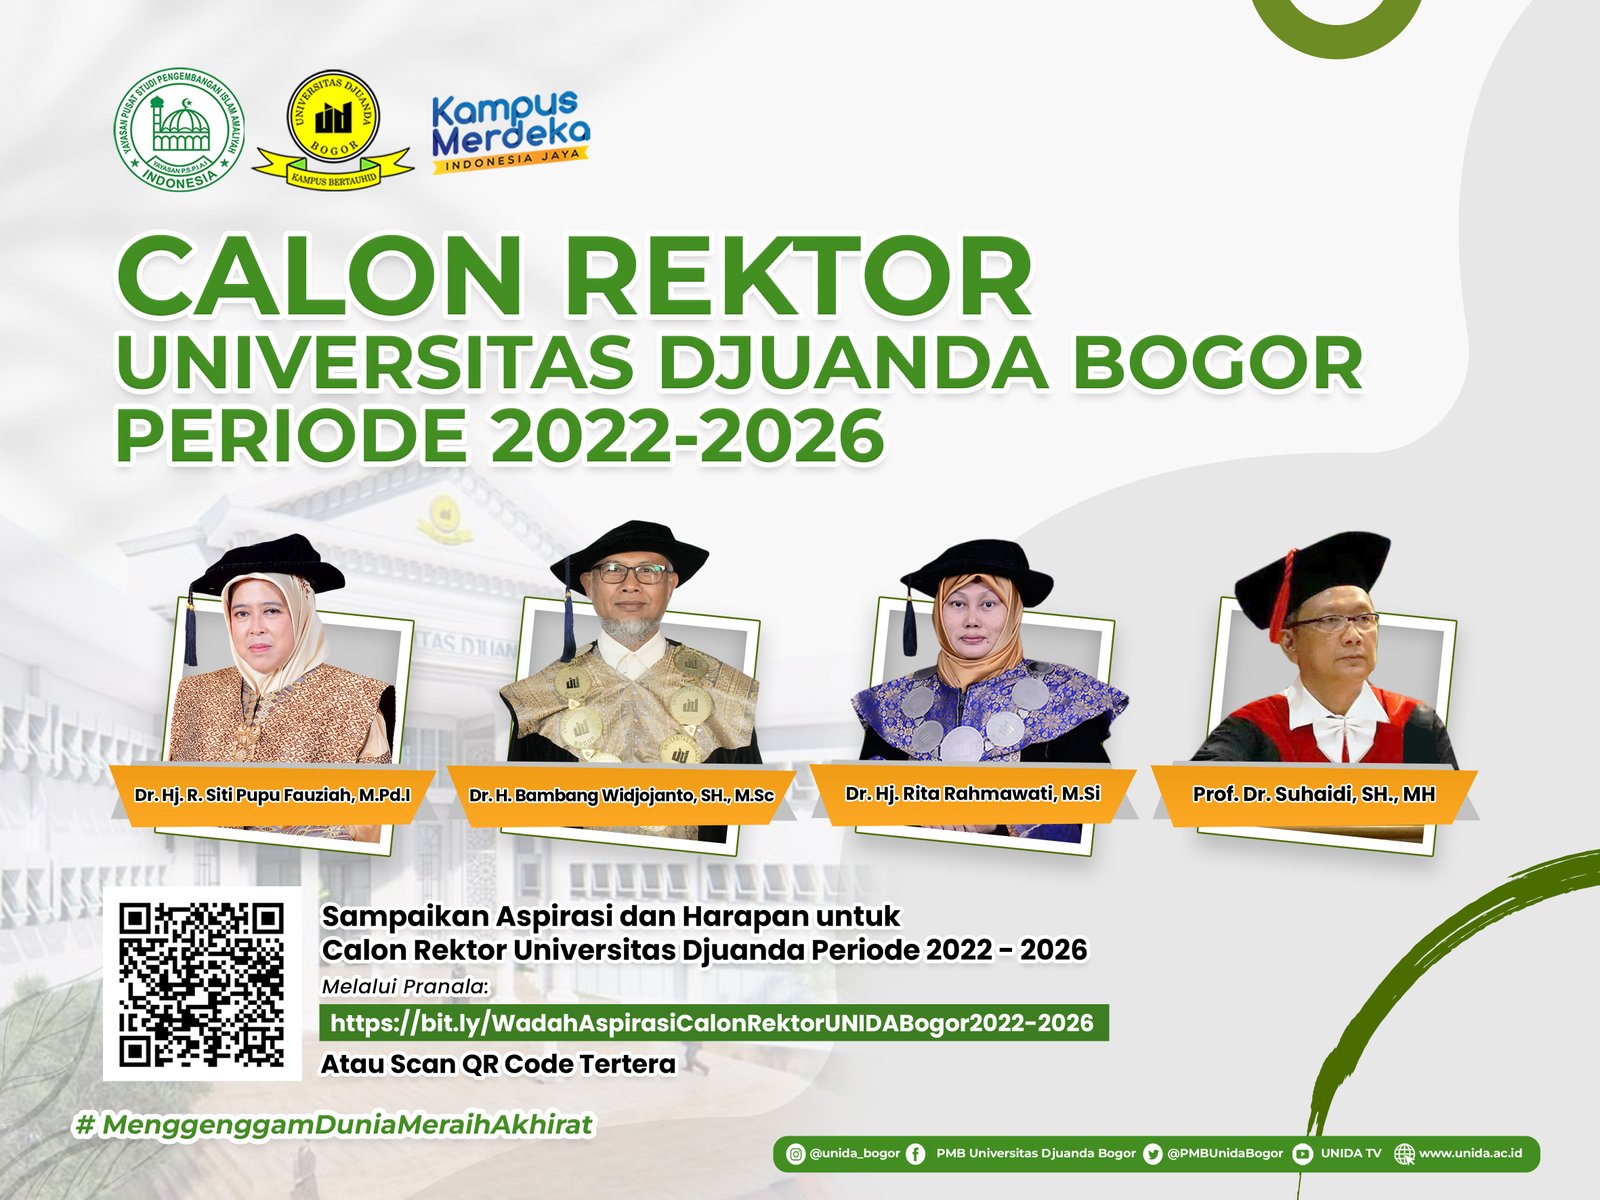 Wadah Aspirasi dan Harapan untuk Calon Rektor Universitas Djuanda Bogor Periode 2022-2026